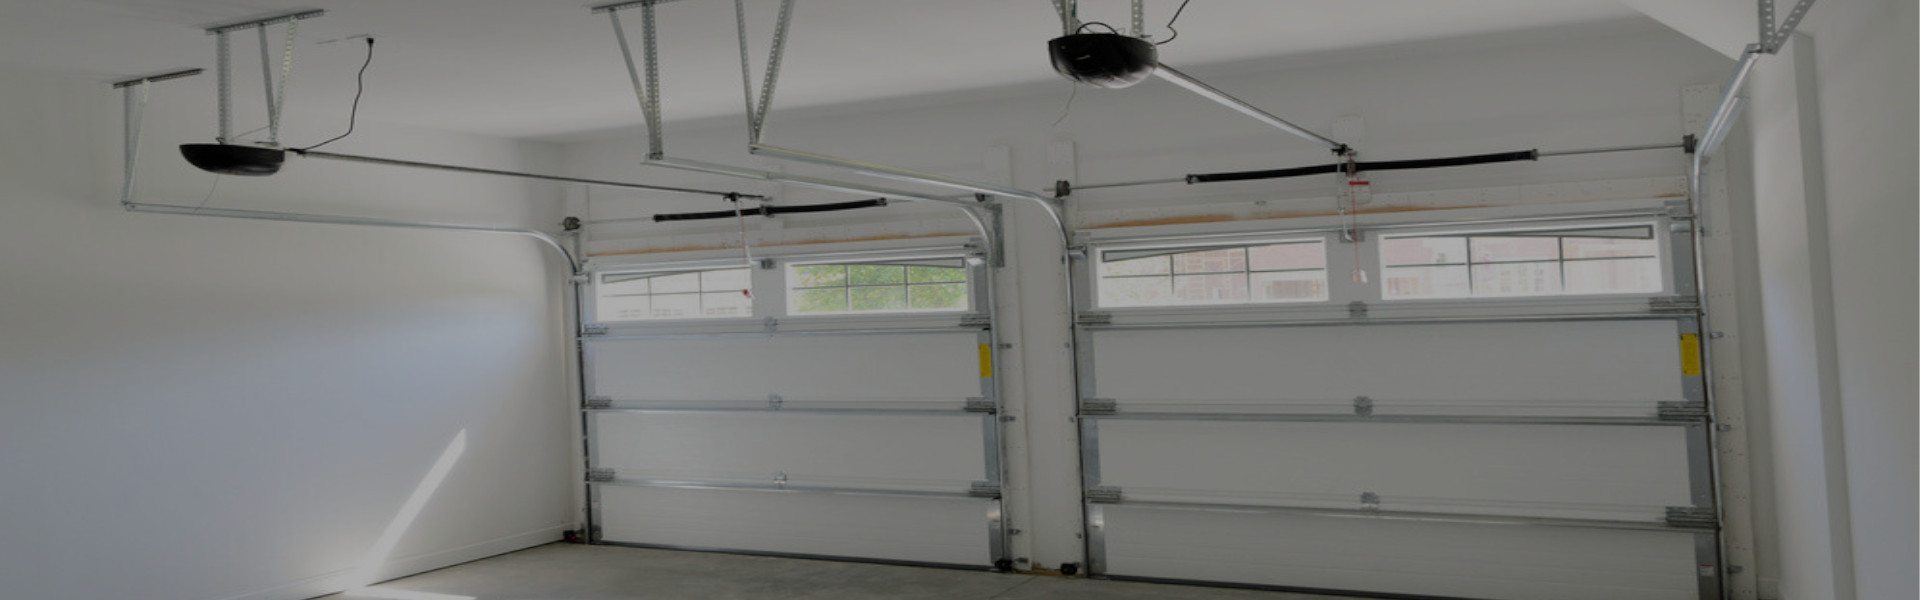 Slider Garage Door Repair, Glaziers in Bexley, DA5